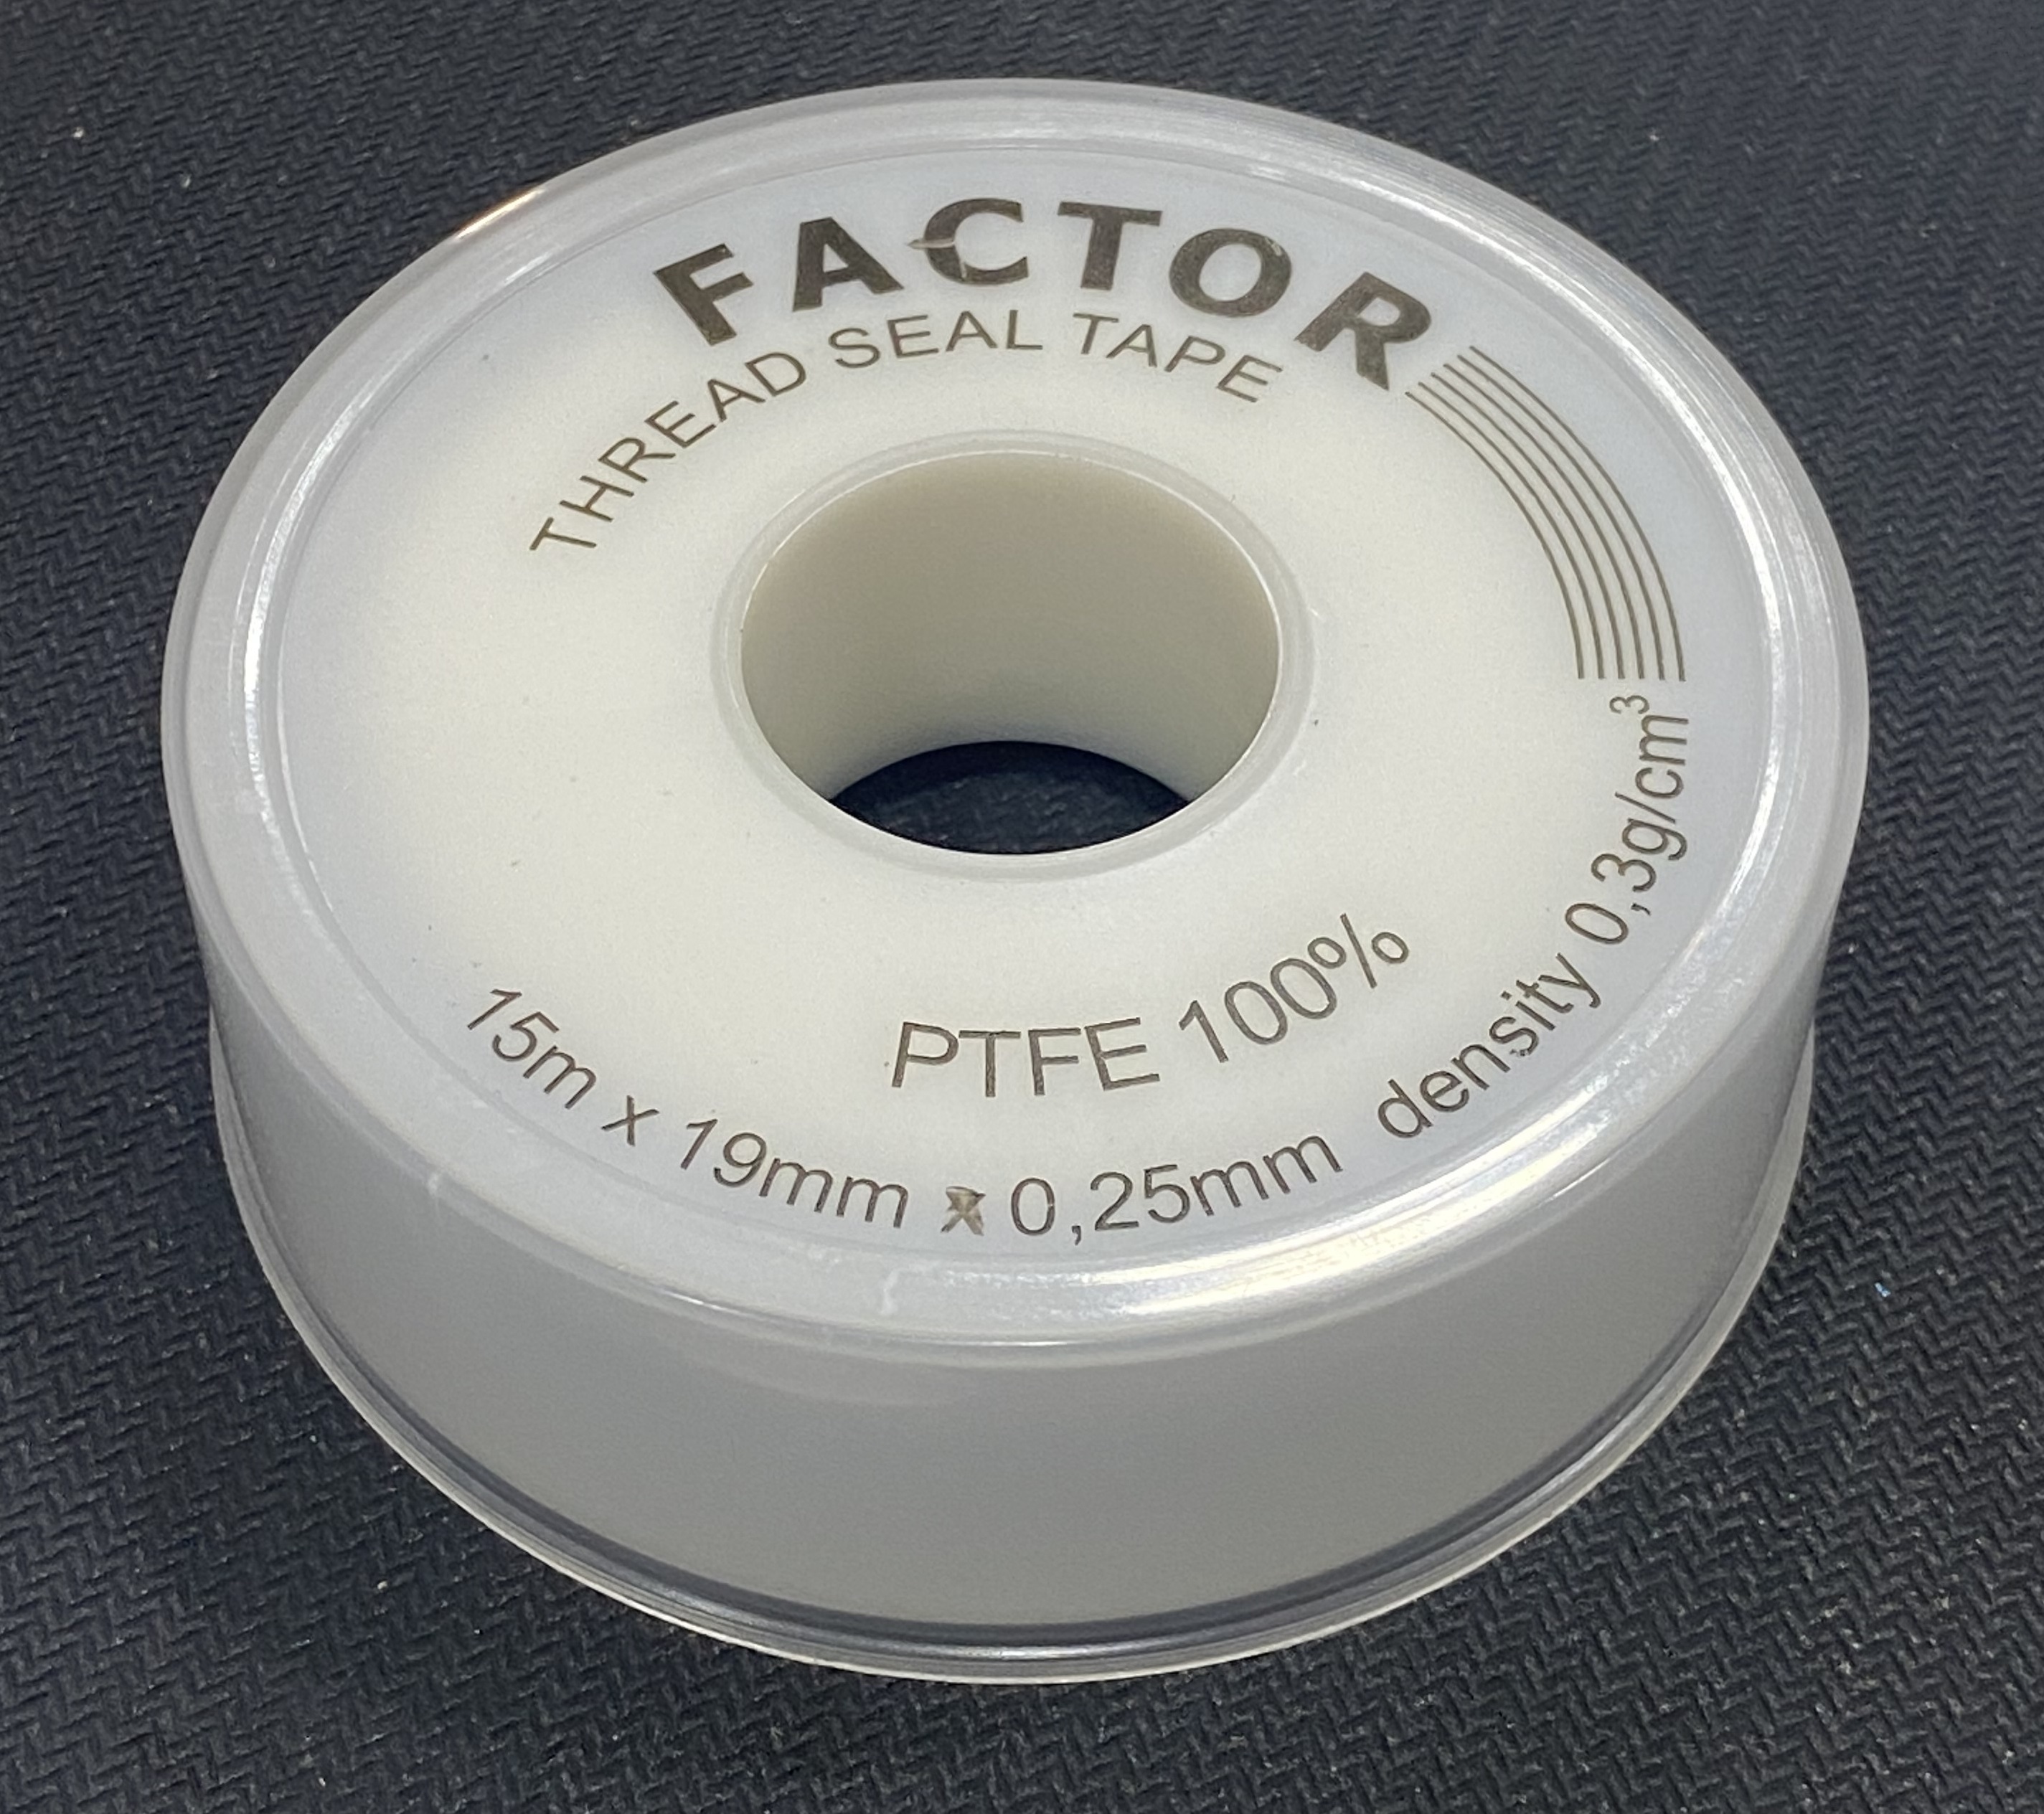 Teflon Tape 15m x 19mm x 0.25mm 100% PTFE